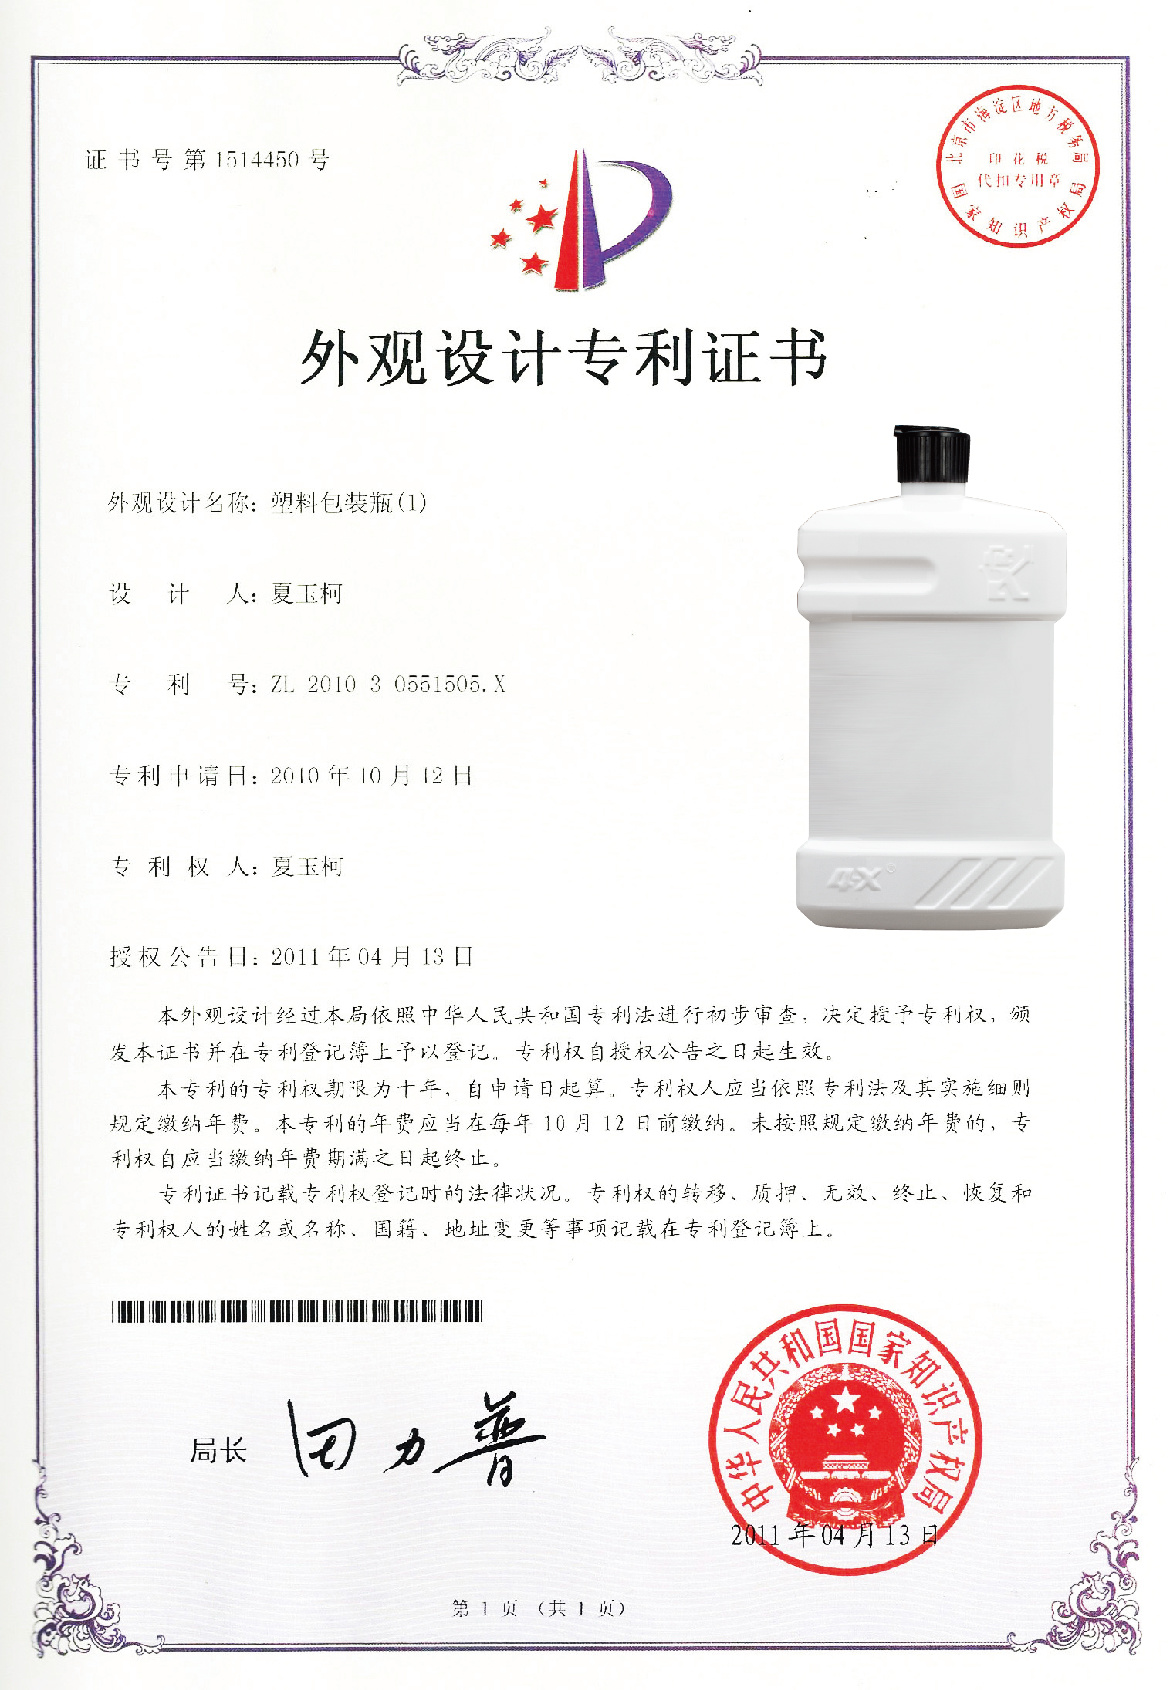 狮克塑料瓶2专利